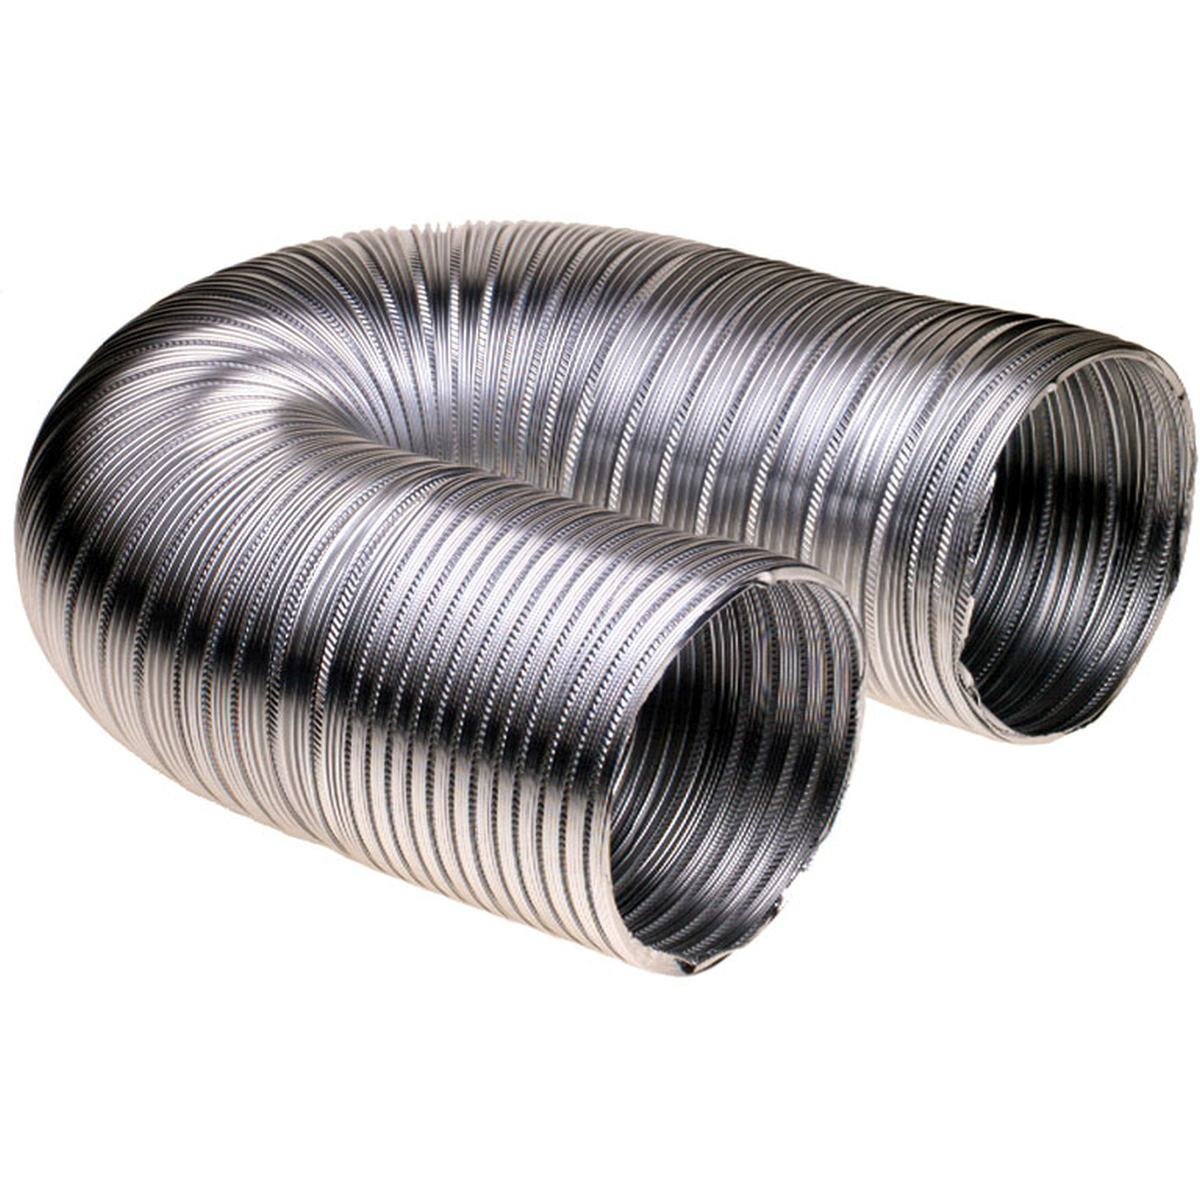 Ventilasjonsslange i aluminium Ø100 mm. 3,0 meter